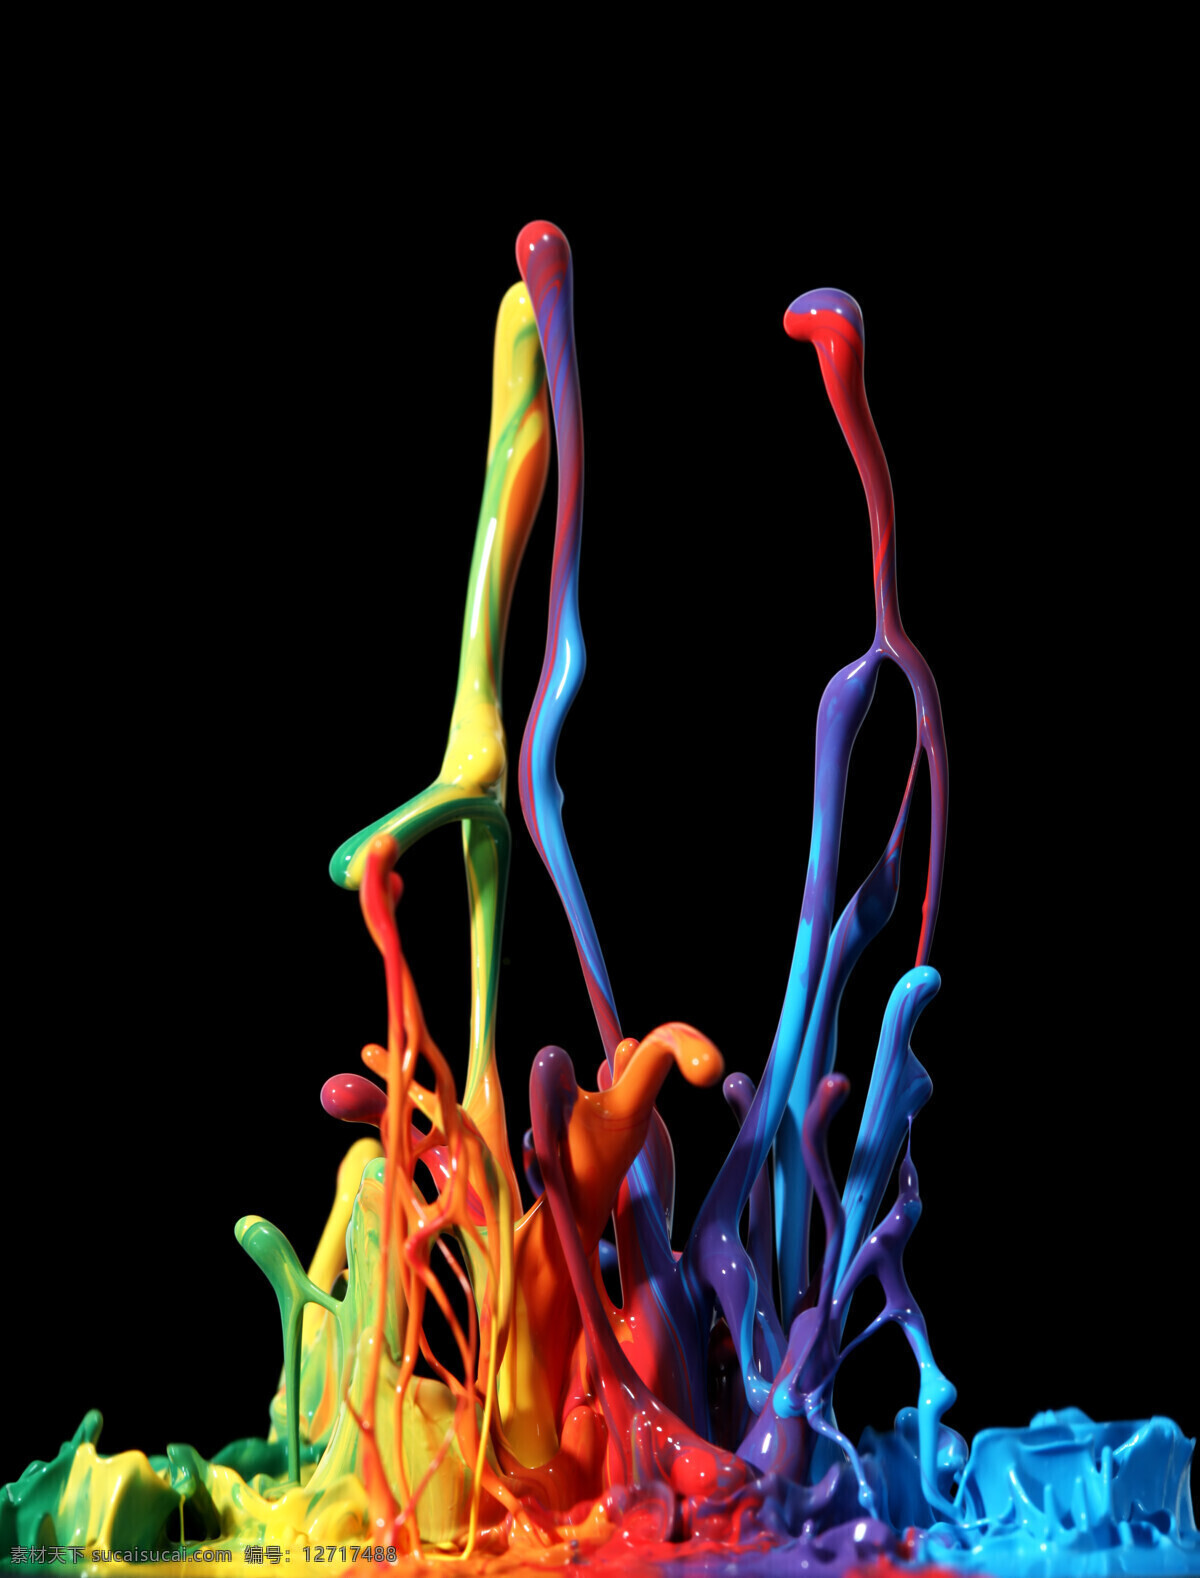 动感 喷溅 颜料 飞溅的油漆 飞溅的颜料 色彩 彩色 动感颜料 动感油漆 3d油漆喷溅 底纹背景 背景图片素材 3d设计